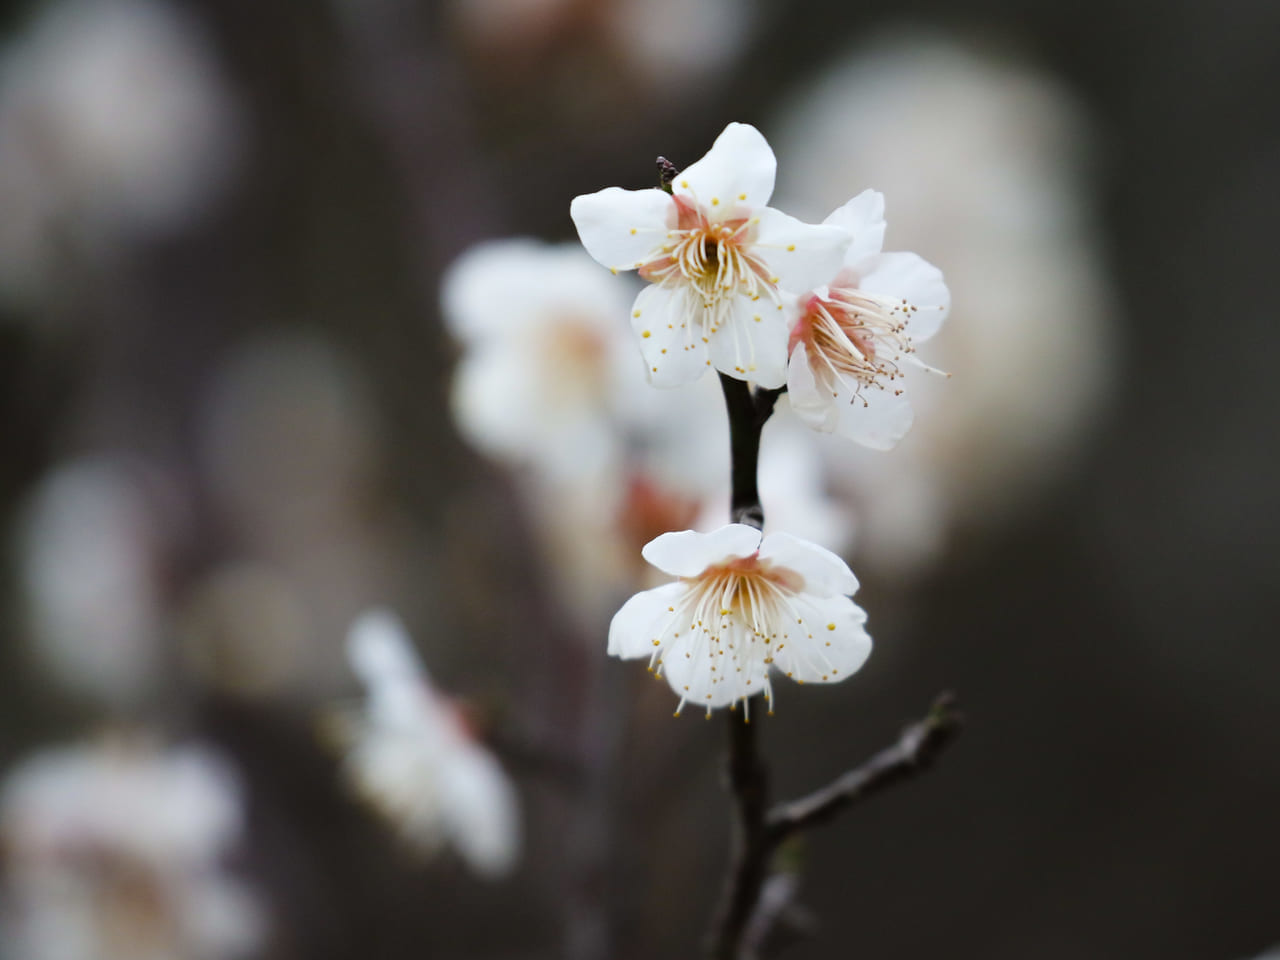 平塚市総合公園の梅が開花。見頃は2月中旬以降の見込み。